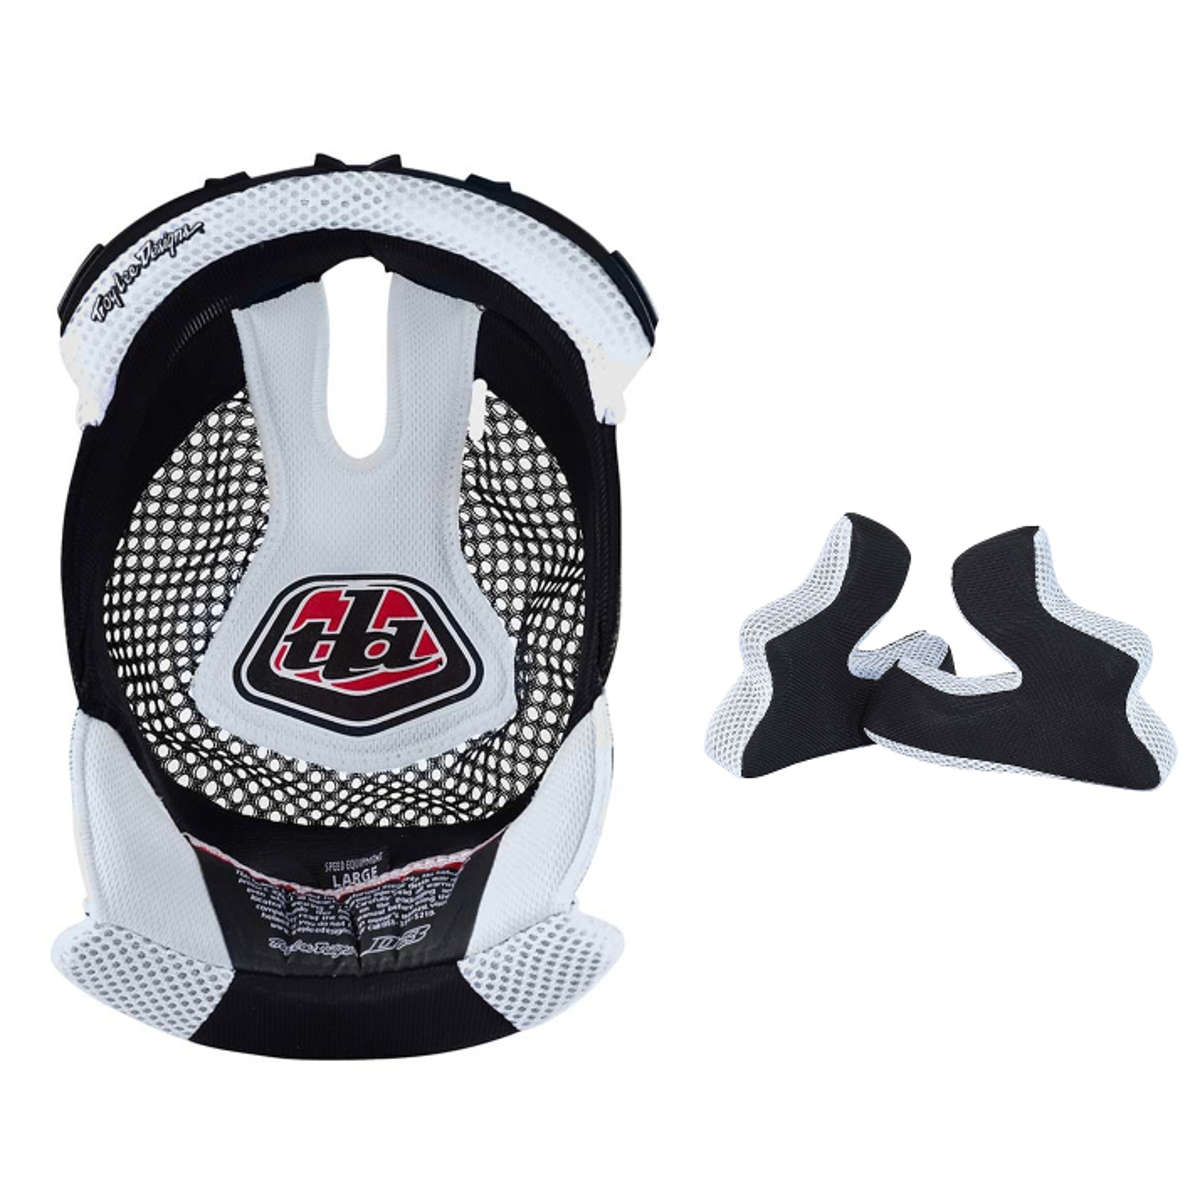 Troy Lee Designs Helmet Liner and Cheek Pads SE3 White